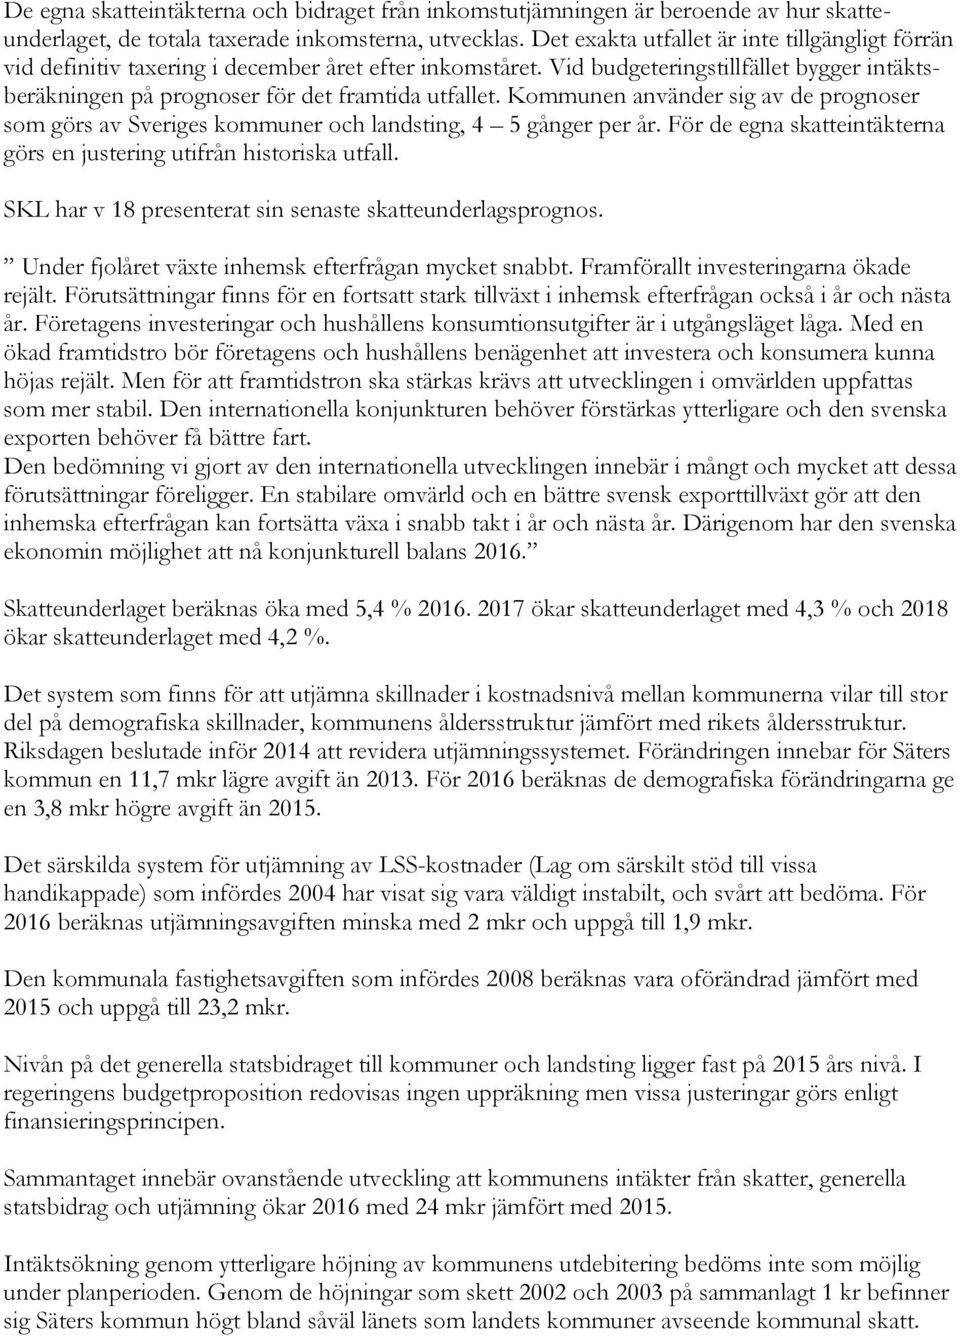 Kommunen använder sig av de prognoser som görs av Sveriges kommuner och landsting, 4 5 gånger per år. För de egna skatteintäkterna görs en justering utifrån historiska utfall.